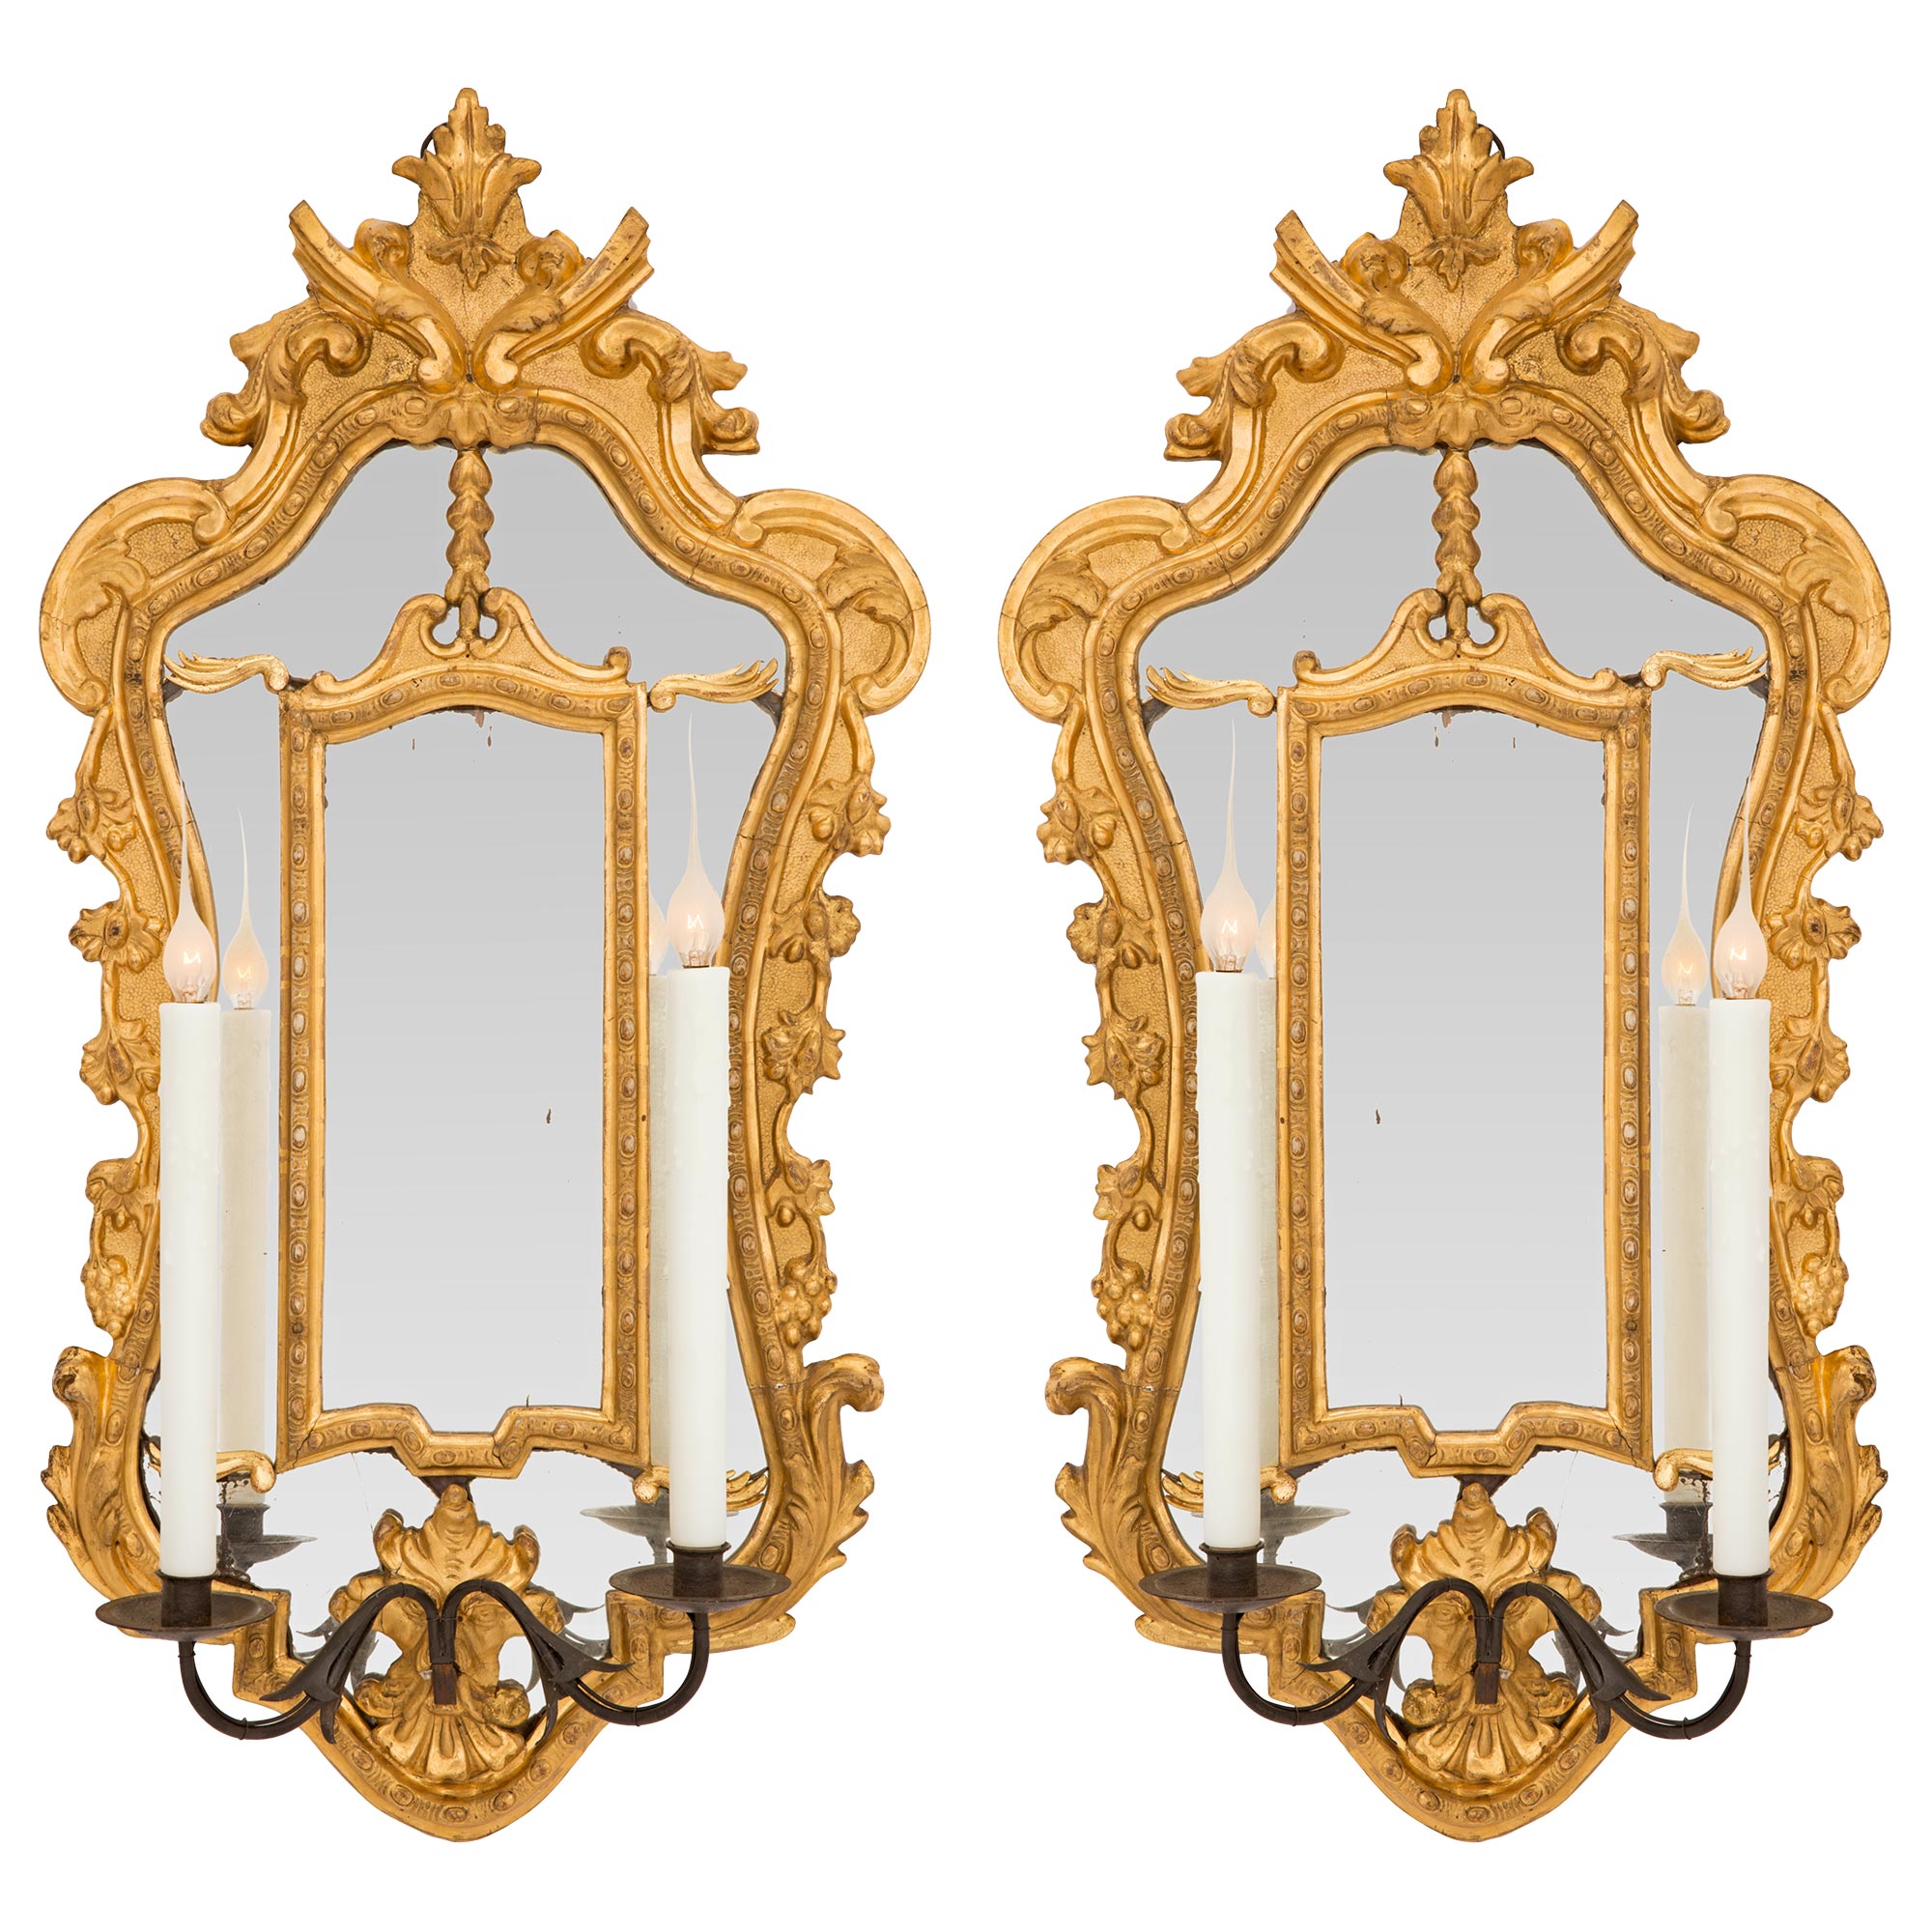 Paire d'appliques italiennes à miroir en bois doré de la fin du XVIIIe siècle